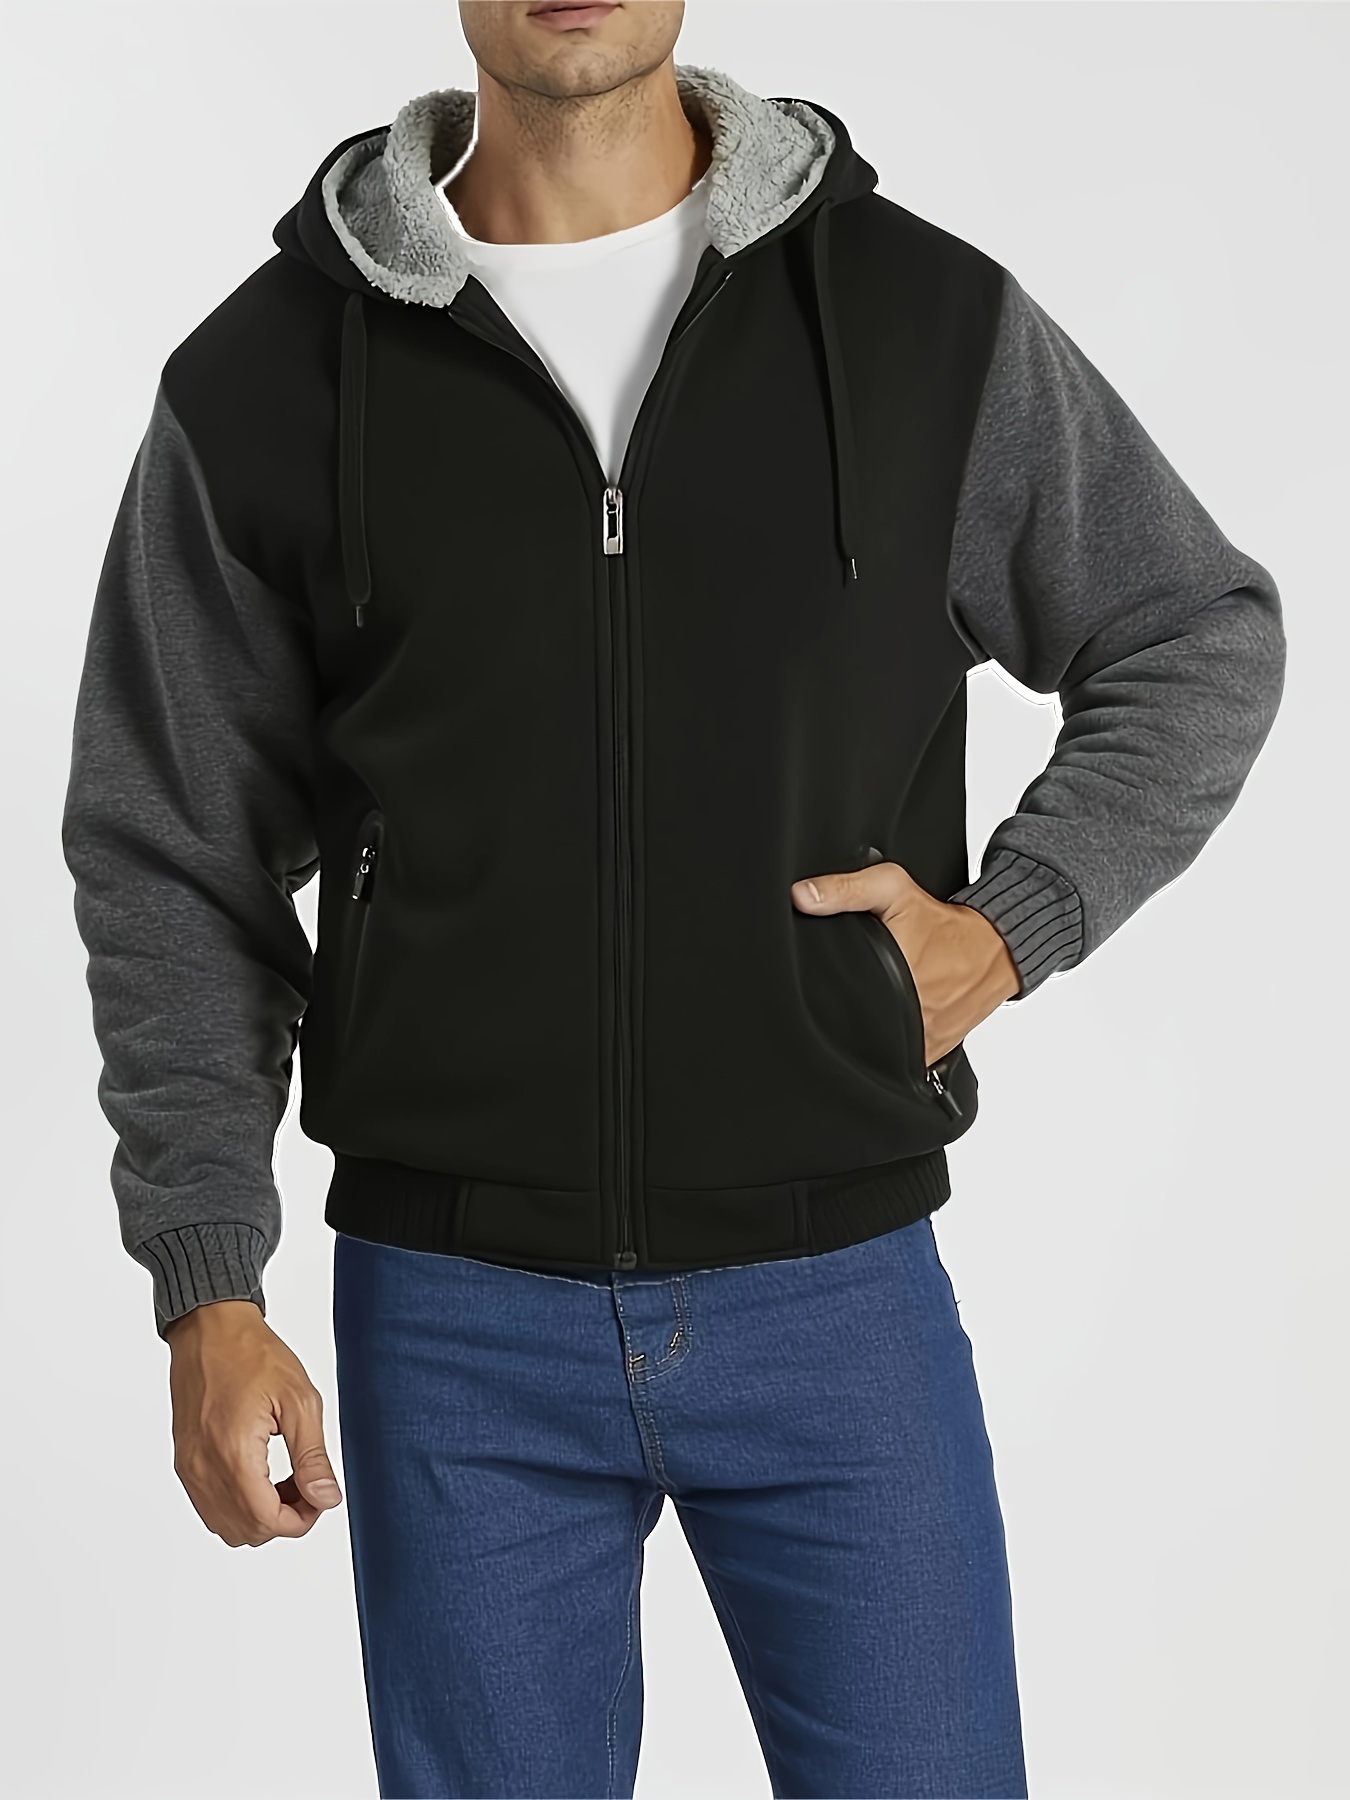 Uomo Giacca Termica Invernale Con Cappuccio E Zip, Abbigliamento Da  Palestra Per Uomo